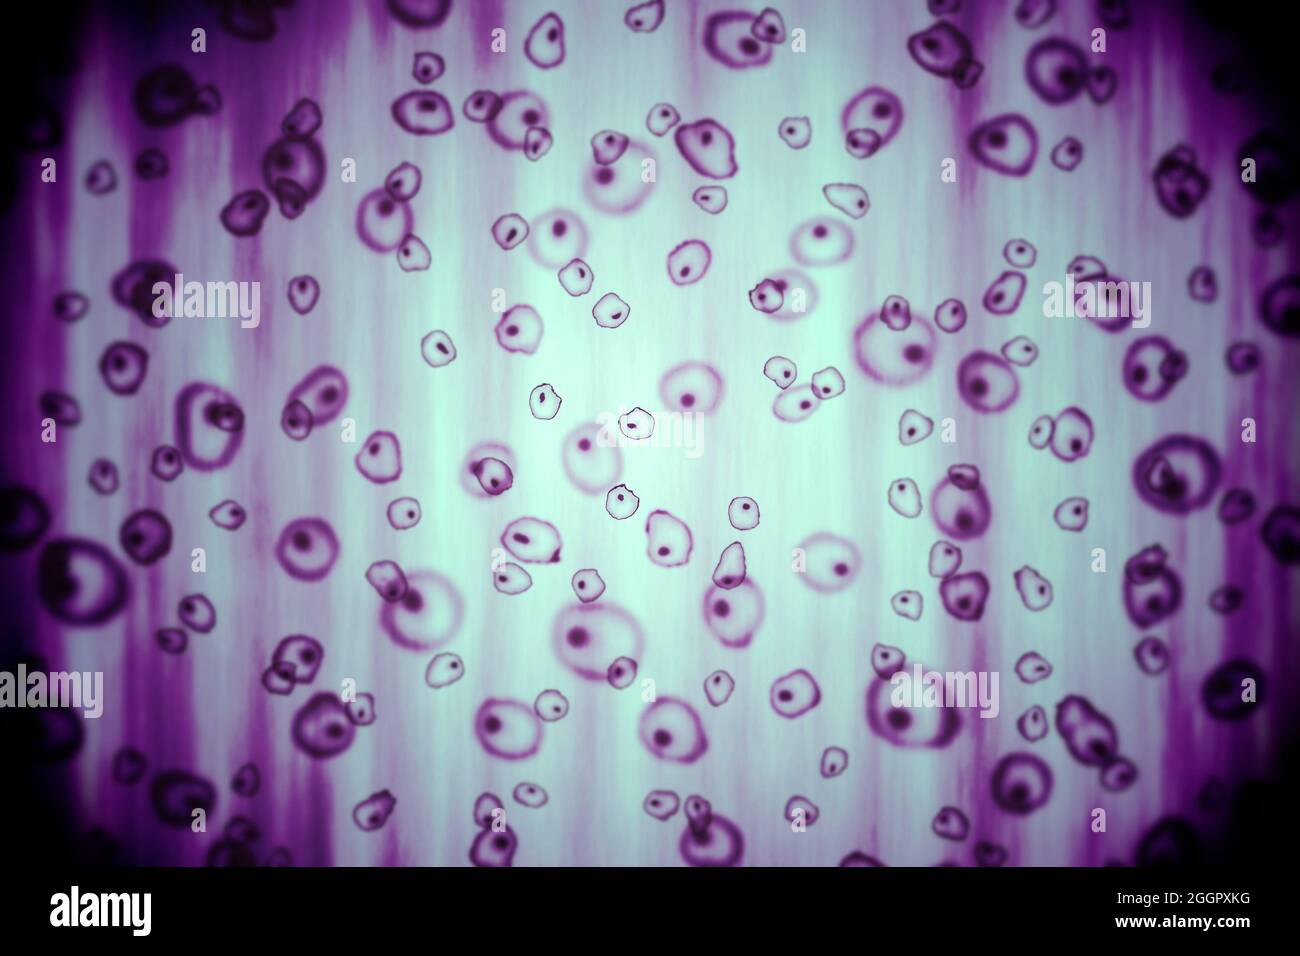 Ilustración de células bajo un microscopio Foto de stock